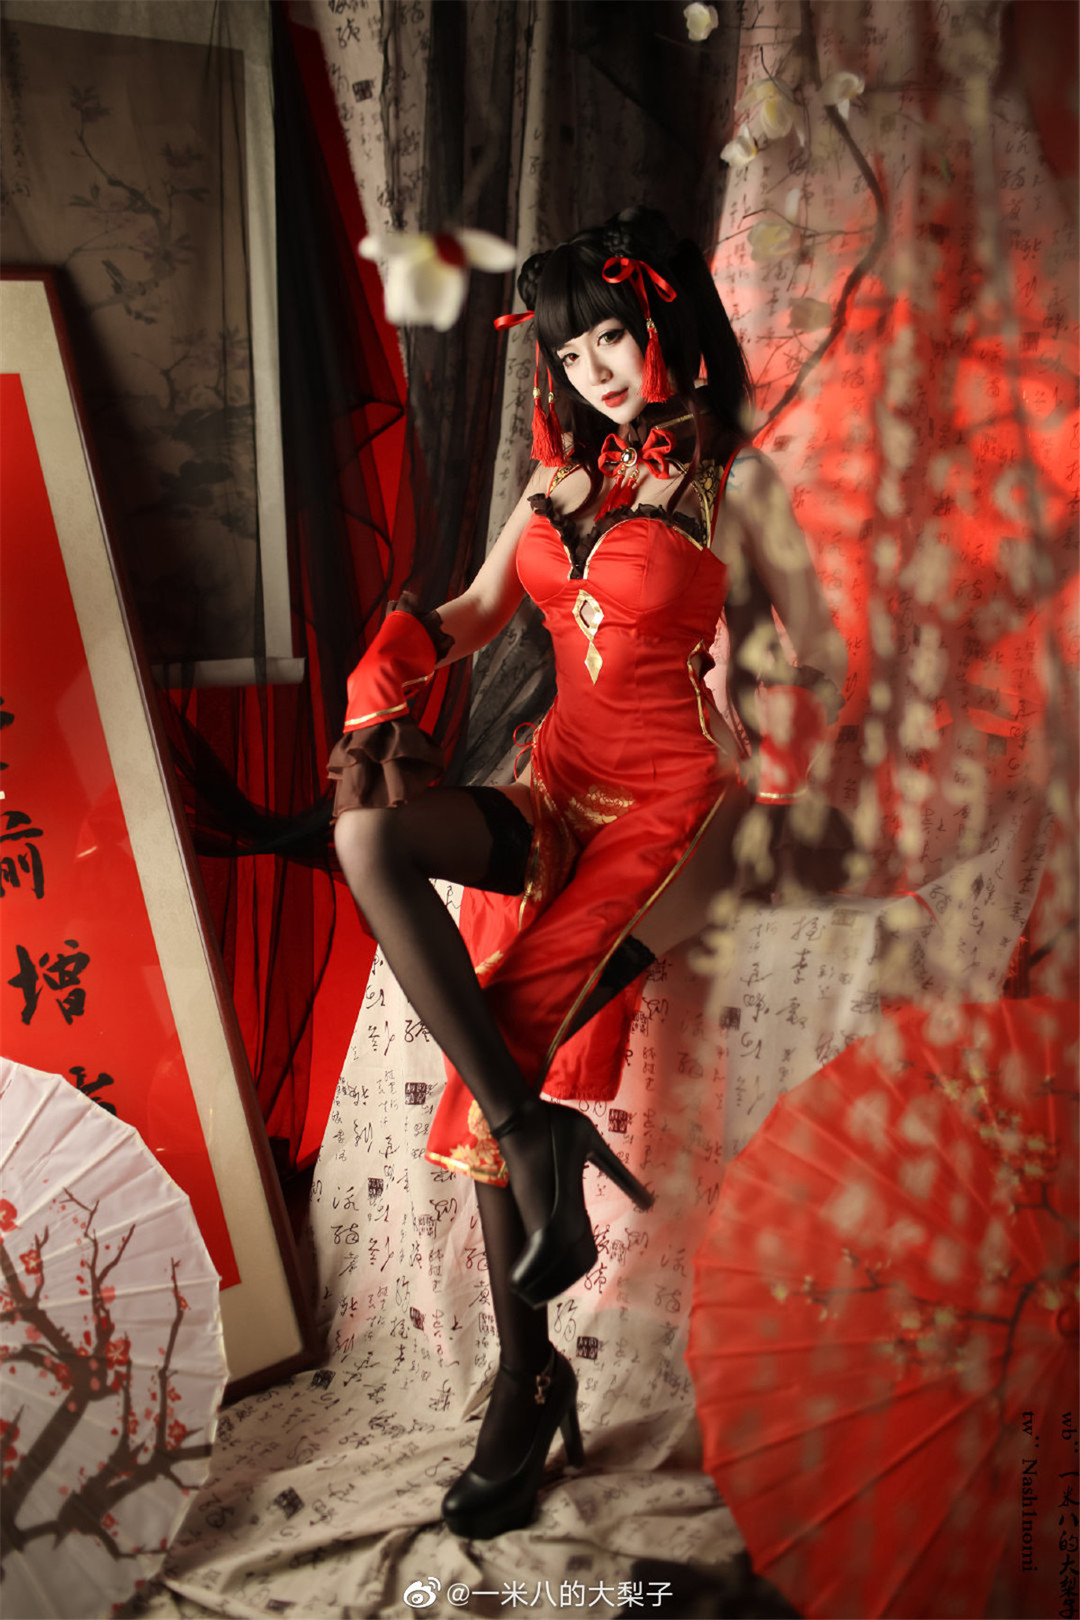 一米八大梨子的《时崎狂三新春旗袍》,红色旗袍新春特辑,风情万种的新年时尚革命-风格子